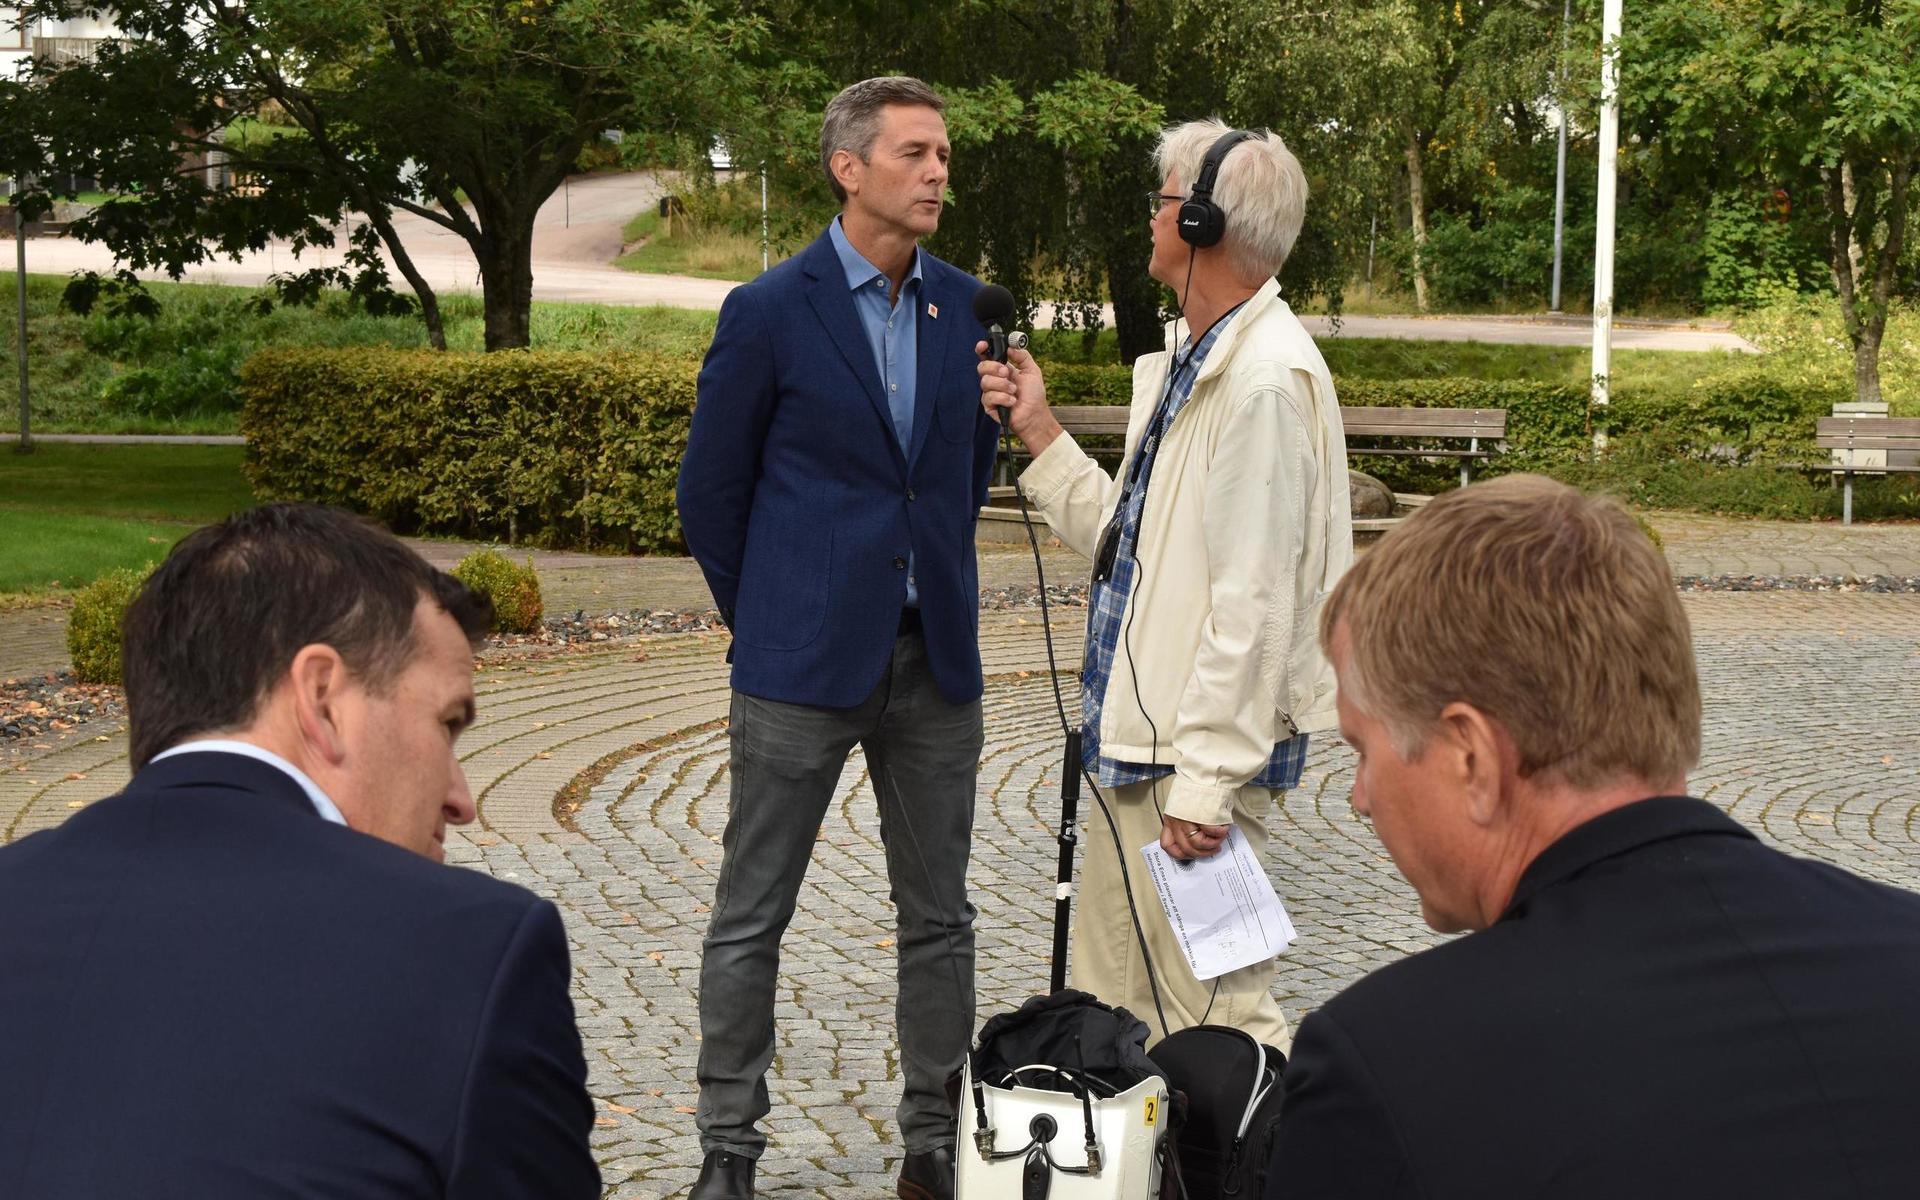 Brukschefen Håkan Naij intervjuades av flera medier om beslutet. I förgrunden syns Hyltes kommunråd Ronny Löfquist (S) och Stora Ensos Sverigechef Per Lyrvall.